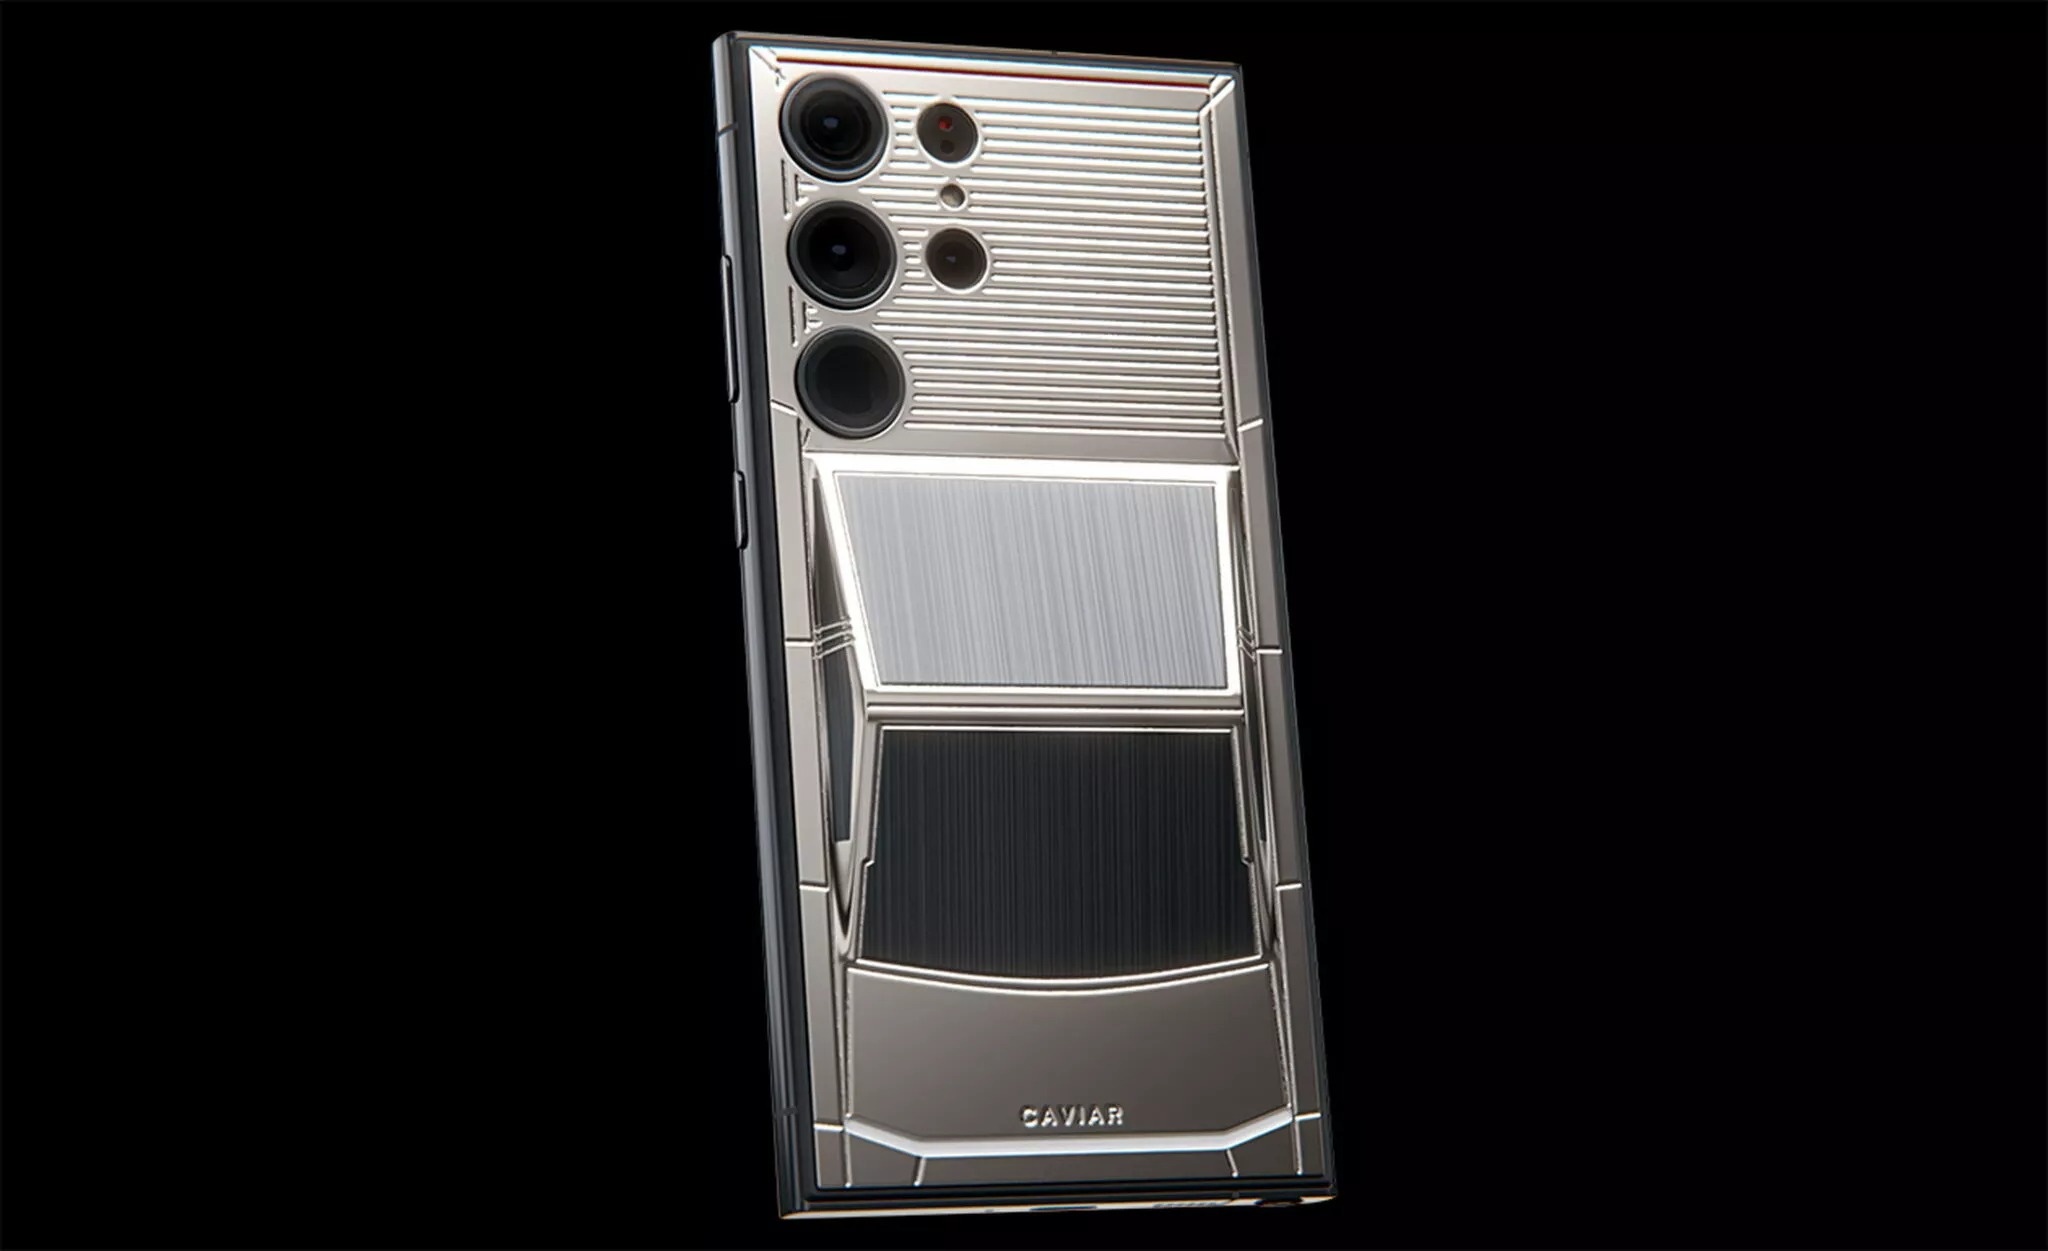 Lấy cảm hứng từ Tesla Cybertruck, điện thoại này có giá gần 9.000 USD - ảnh 5